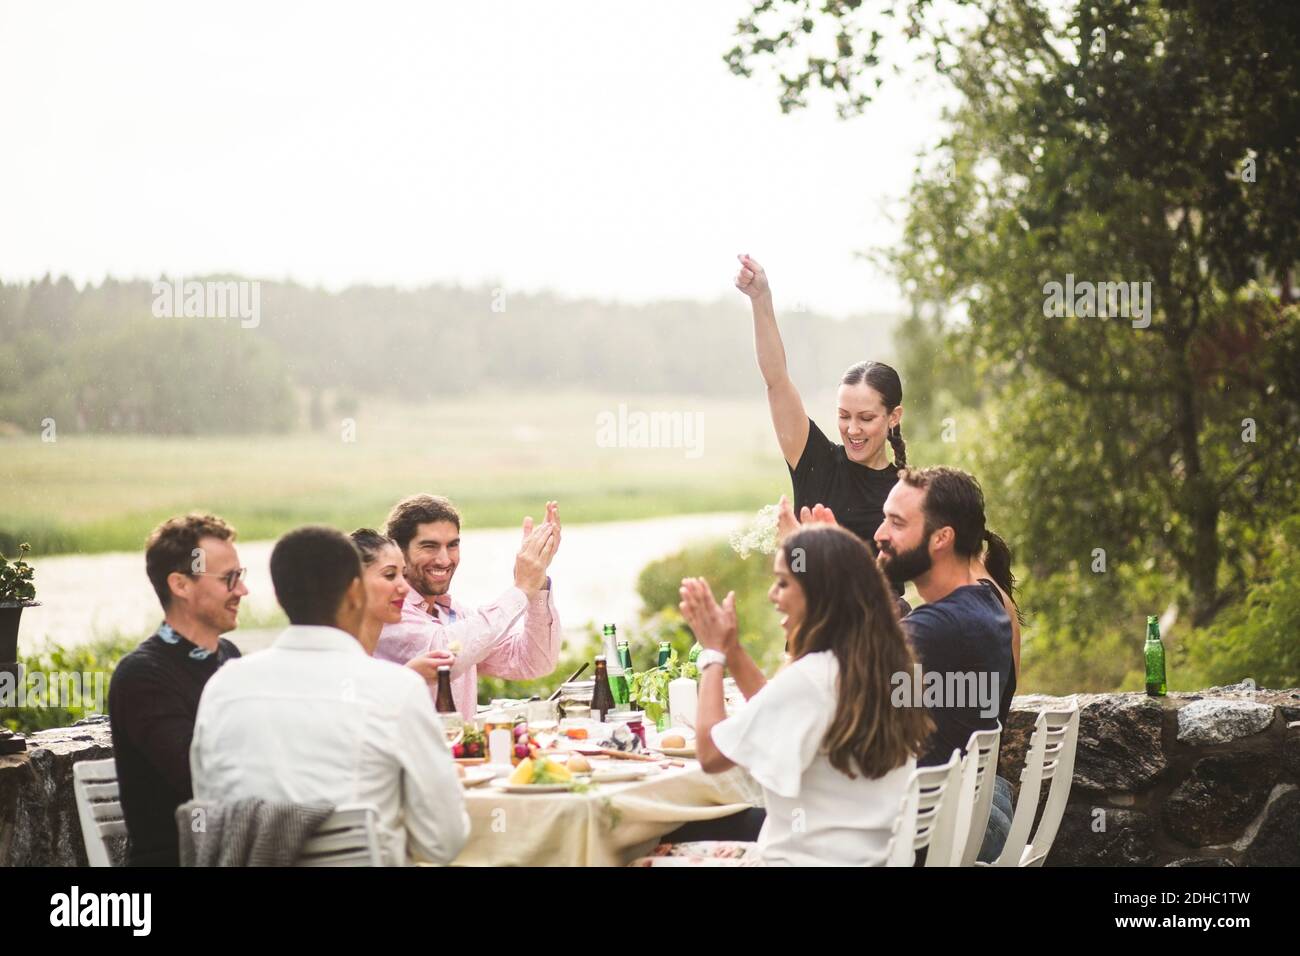 Femme adulte de taille moyenne debout avec le bras levé pendant que les amis applaudissent à la table pendant le dîner dans l'arrière-cour Banque D'Images